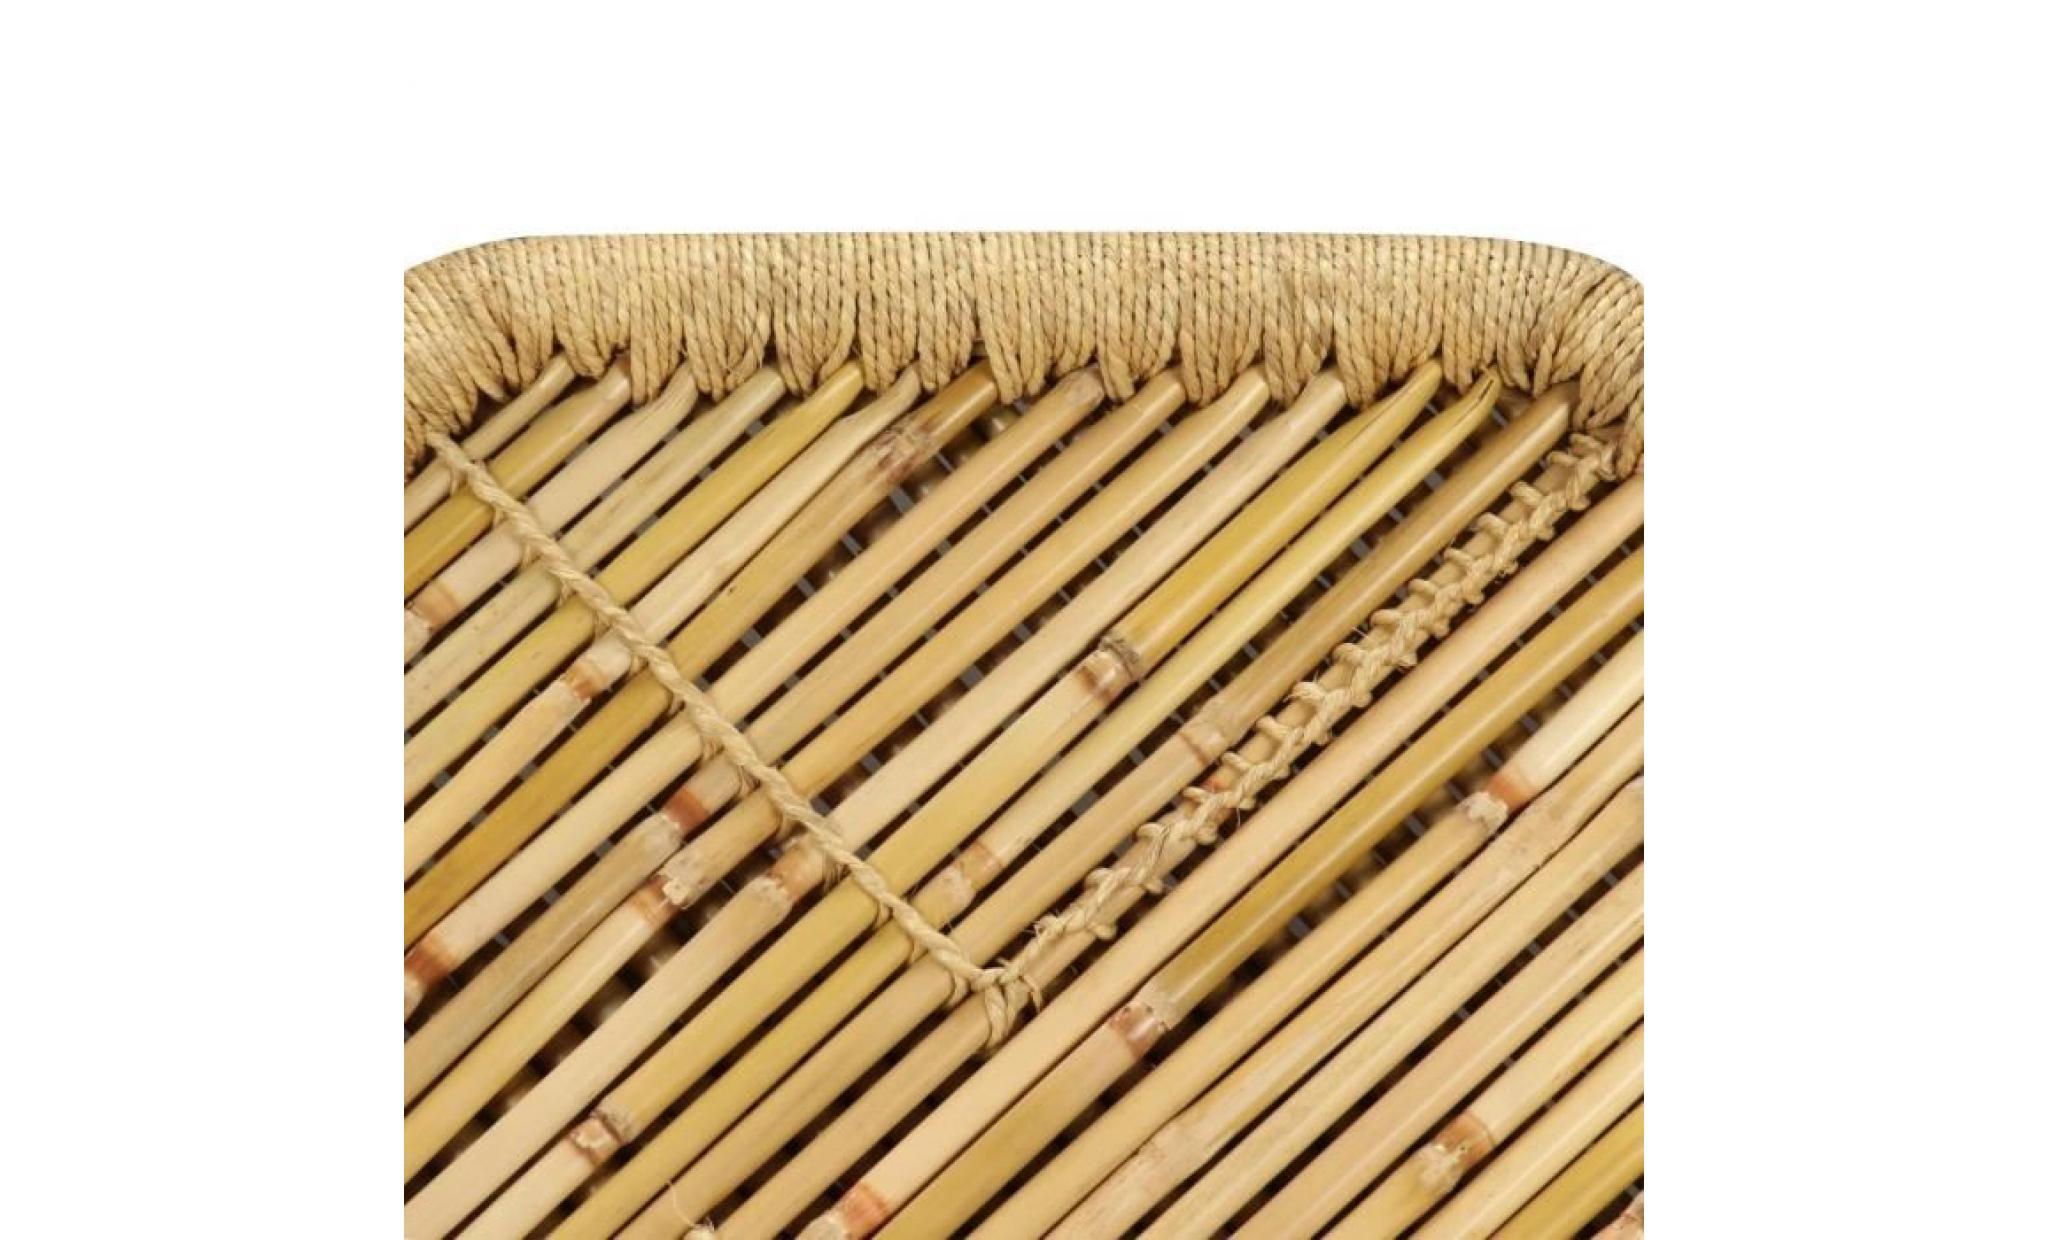 table basse octogonale bambou 60 x 60 x 45 cm pas cher